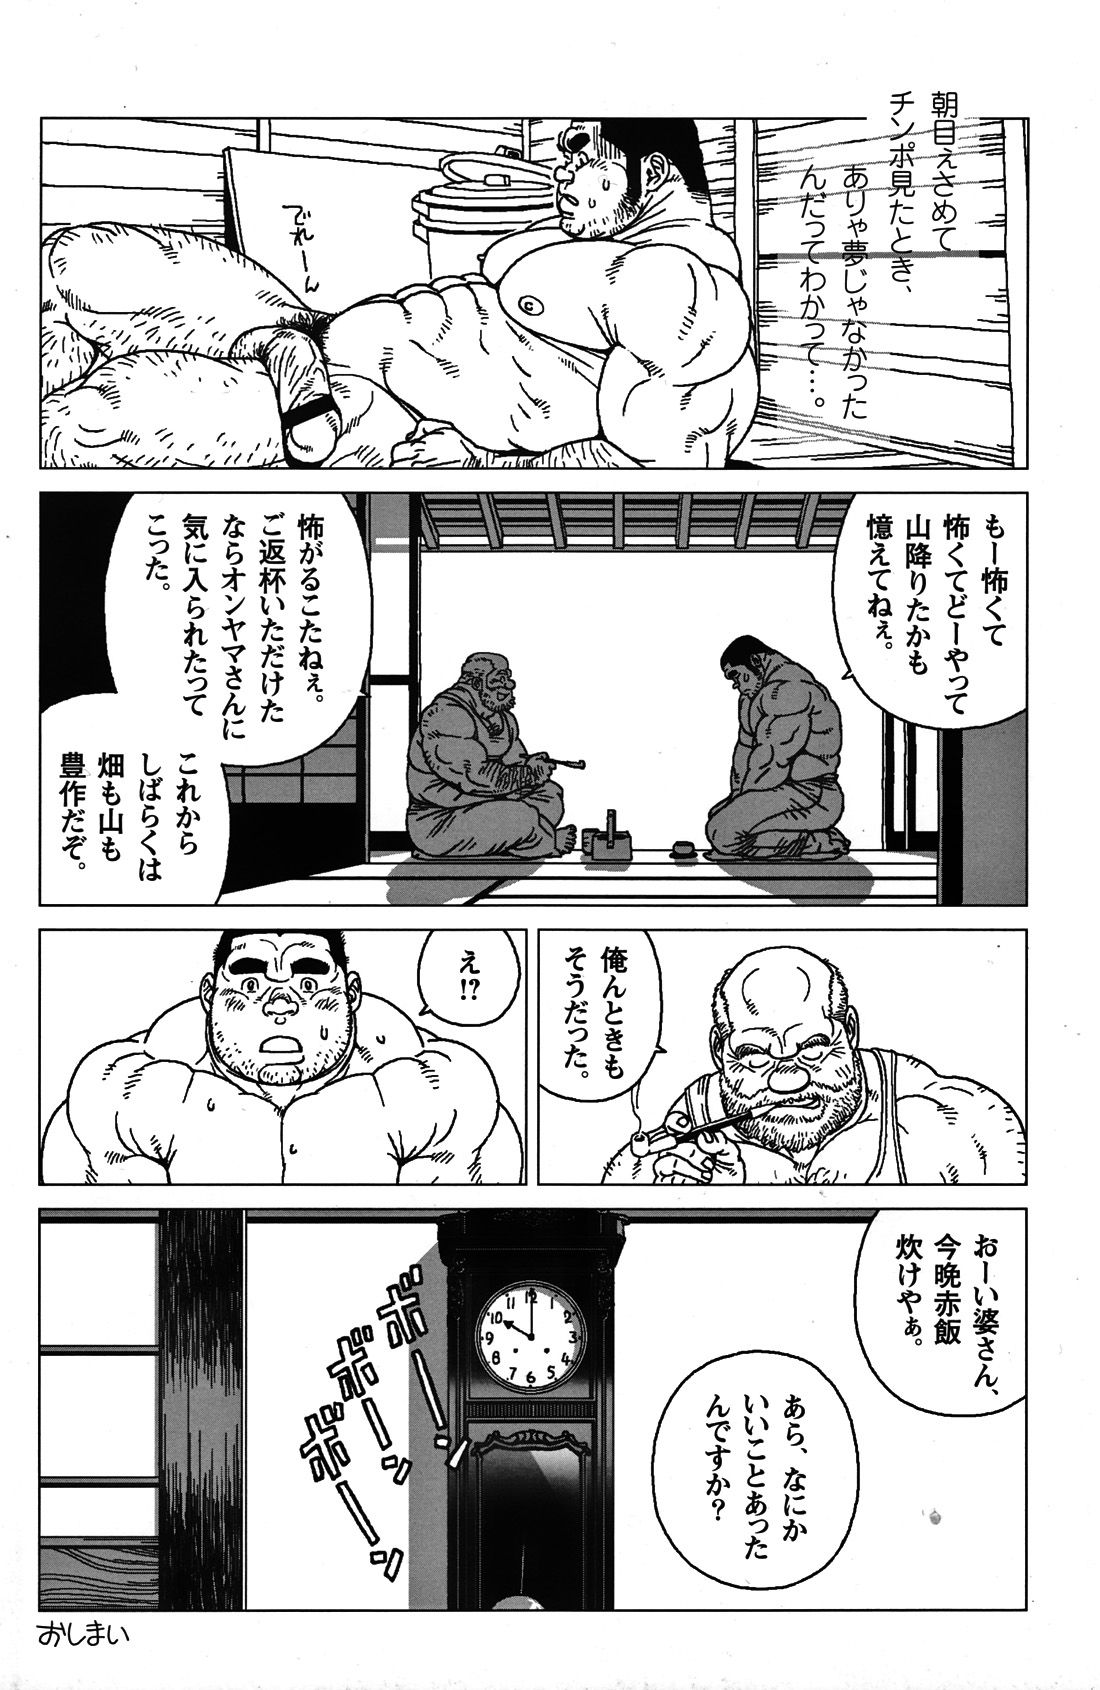 [Jiraiya] オンヤマさんと白い酒 page 8 full